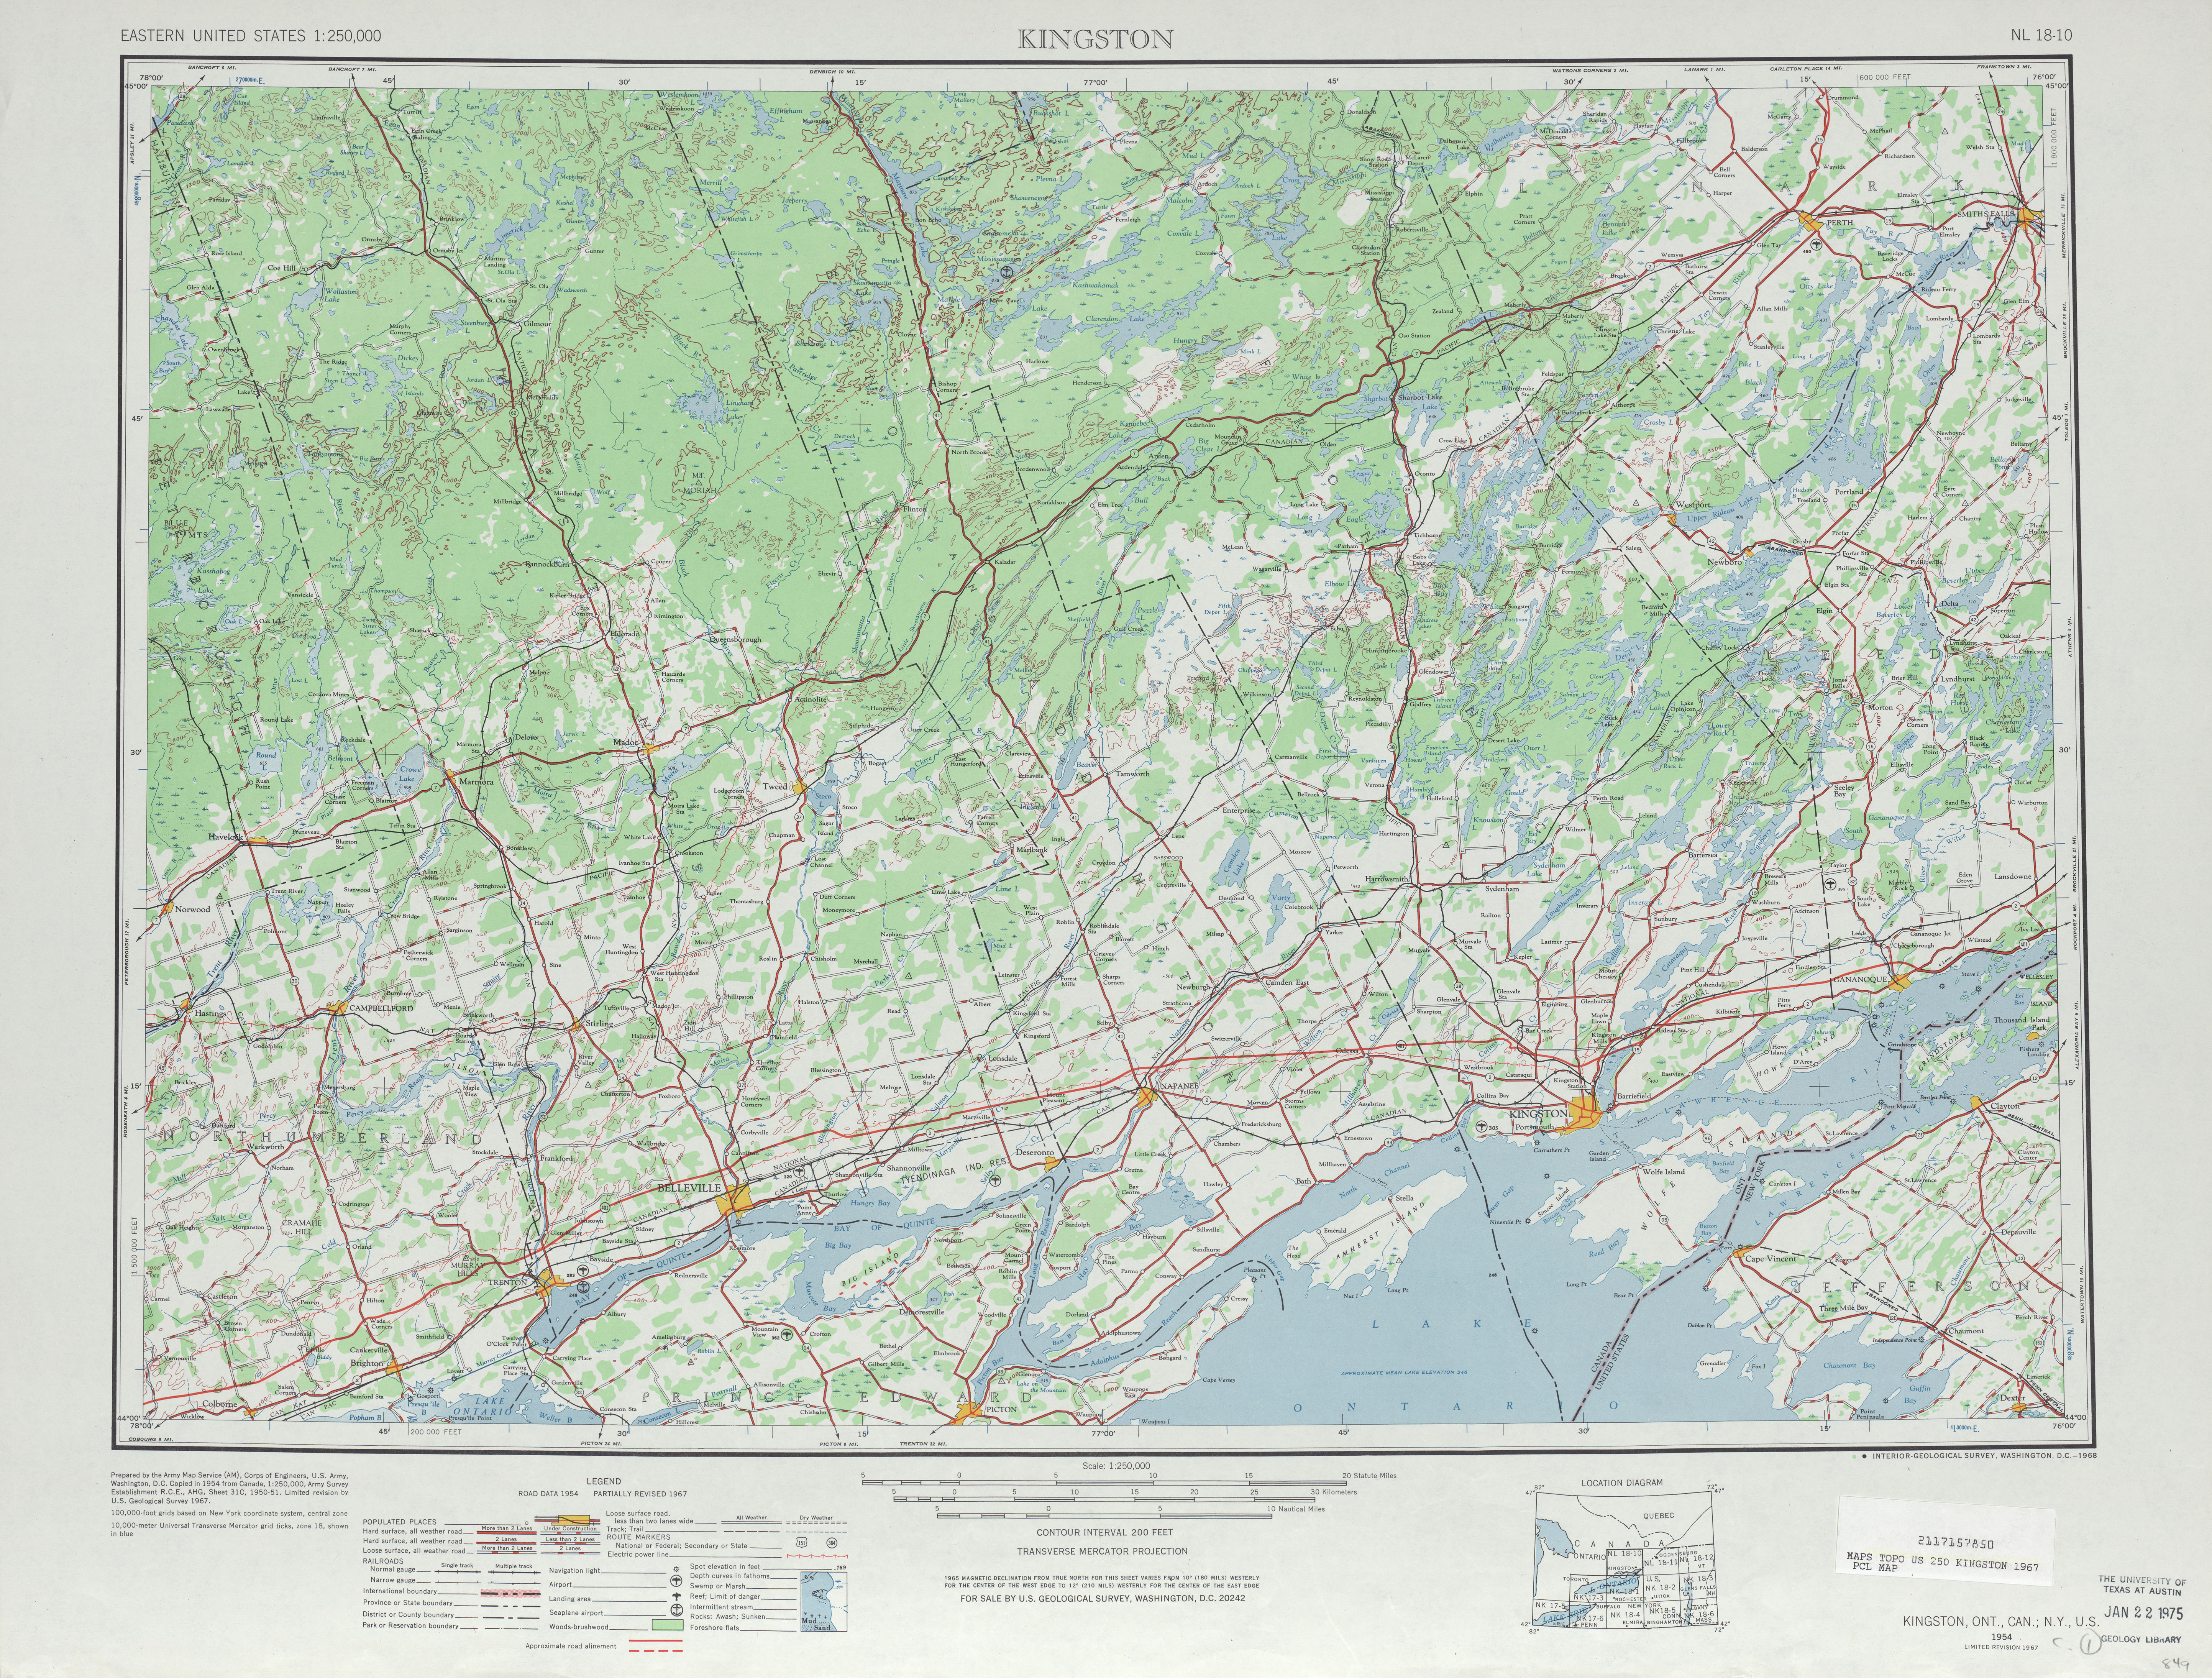 Hoja Kingston del Mapa Topográfico de los Estados Unidos 1967